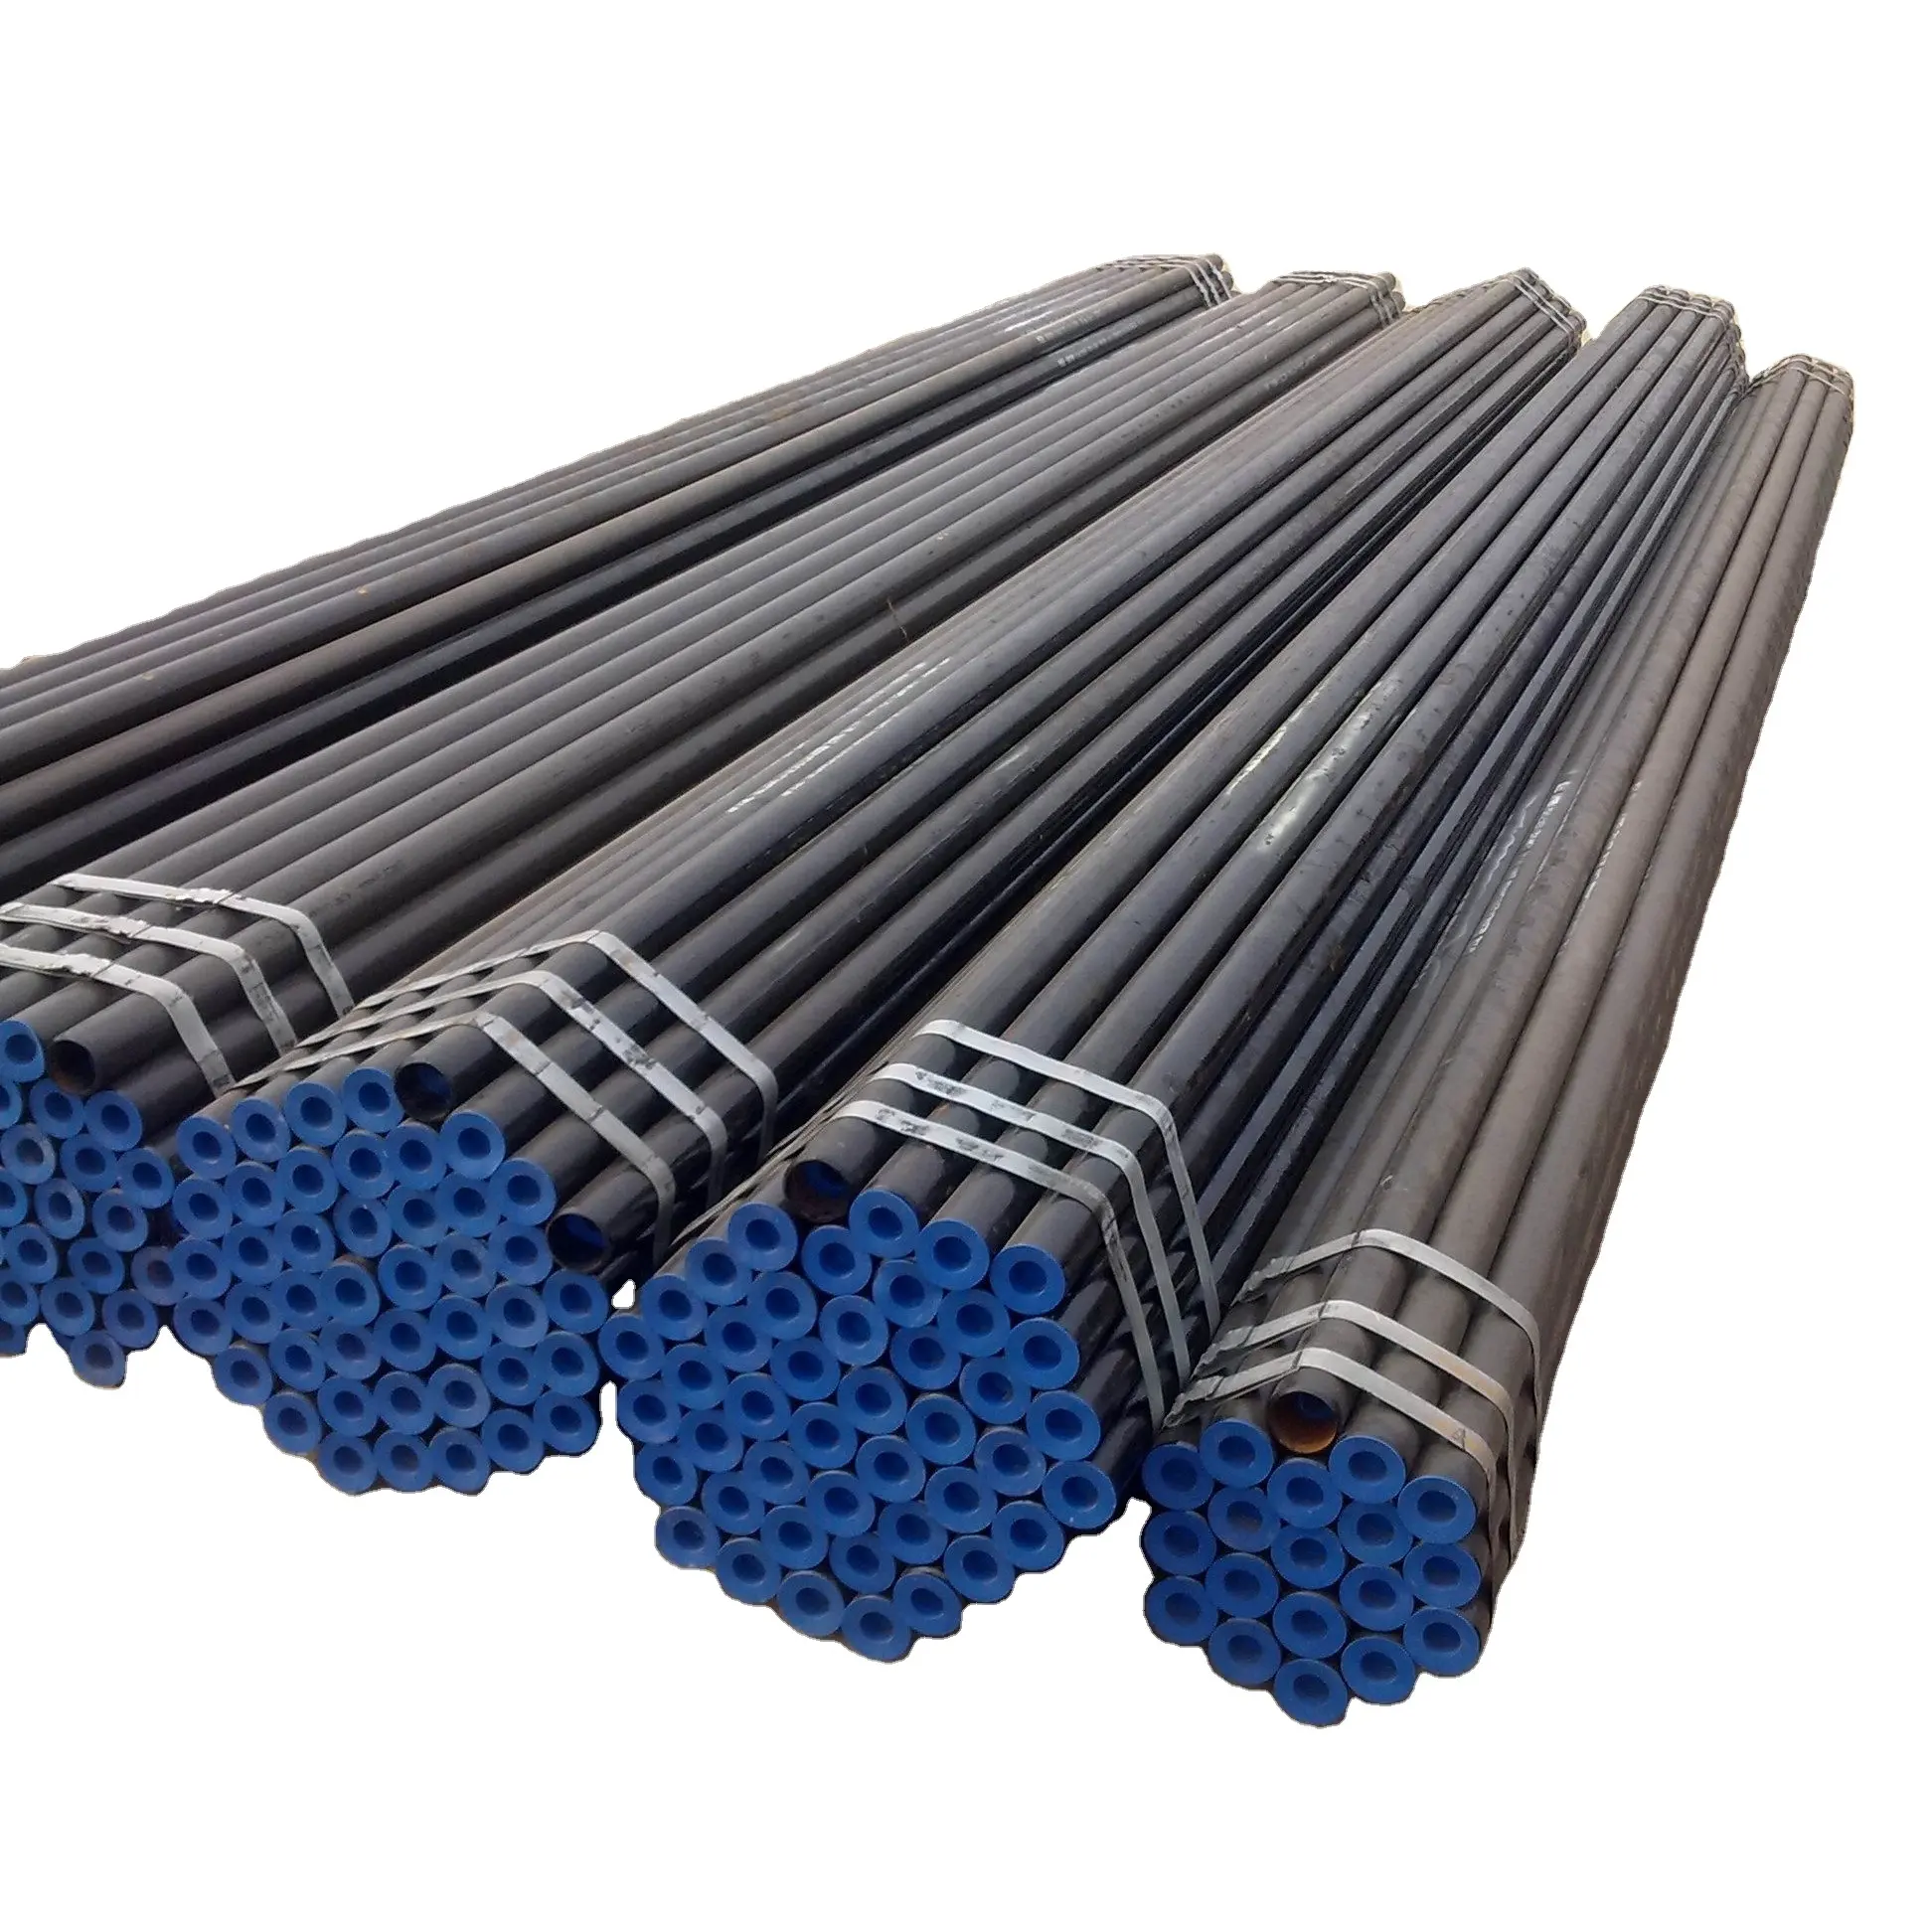 Içi boş karbon dikişsiz çelik borular tayvan 5.5 fiyat 40x3.2mm 1.5 inç 18 inç 24 inç 36 inç boru